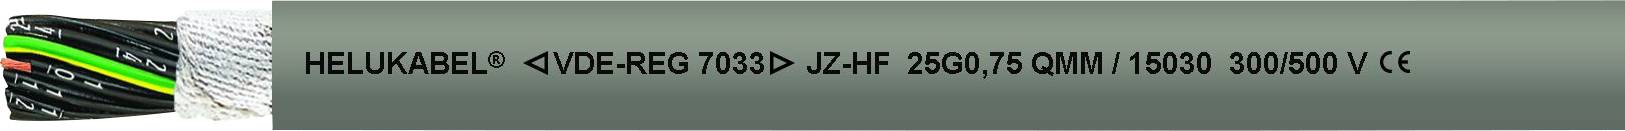 HELUKABEL 15144-1000 Schleppkettenleitung JZ-HF 5 G 4.00 mm² Grau 1000 m